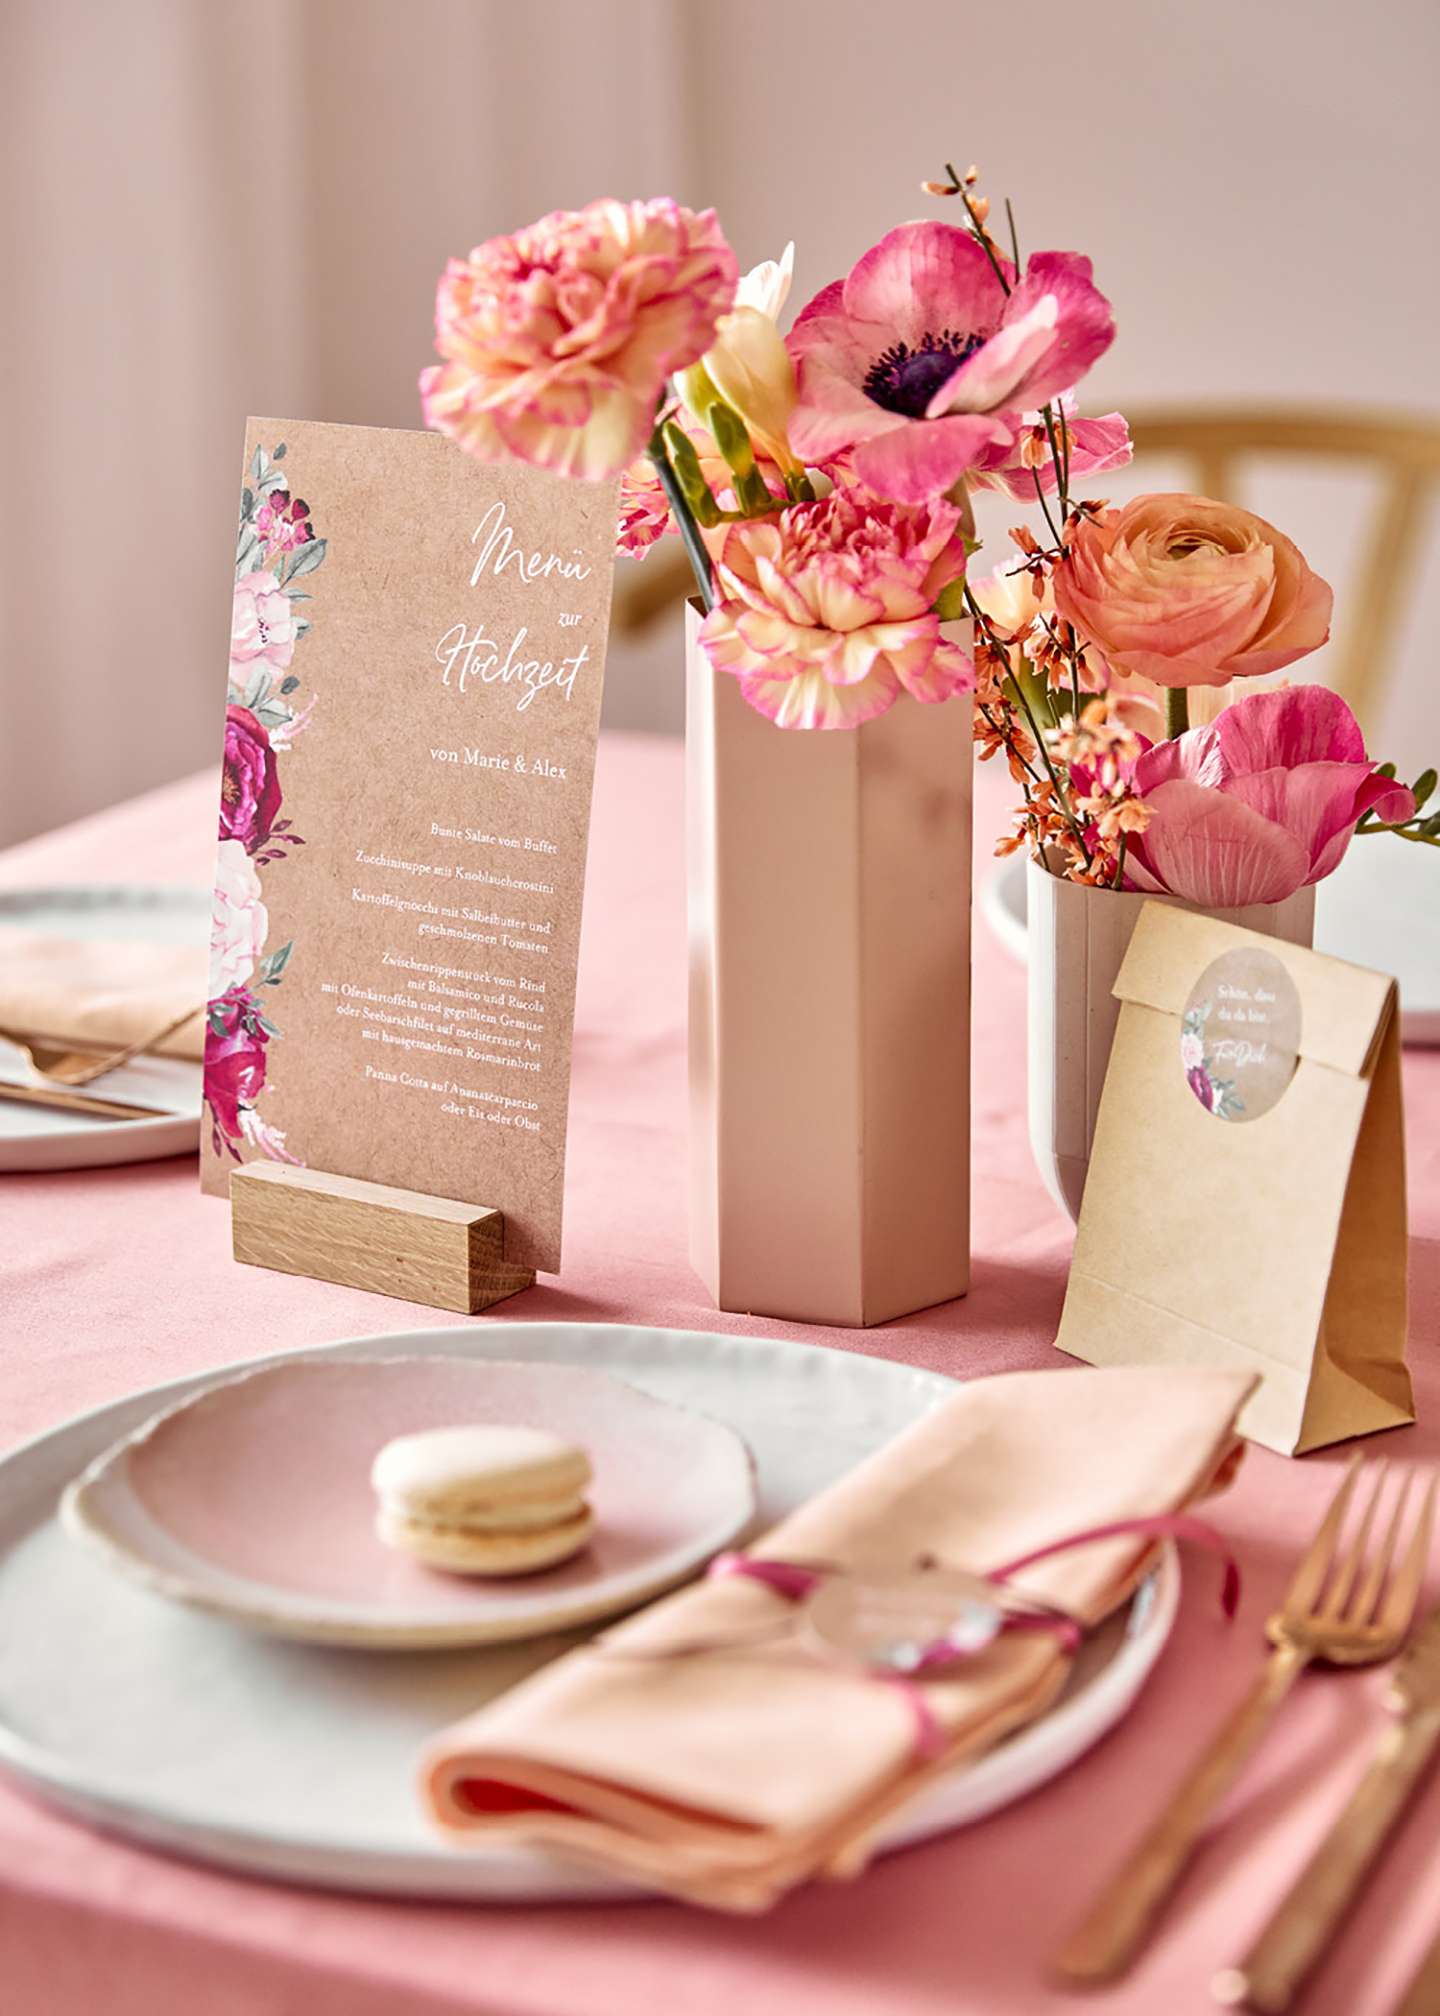 Tischpapeterie liebevoll dekoriert in soften und leuchtenden Pinktönen. Die Blumen auf dem Tisch passen farblich zur Tischdeko und ein Maccaron schmückt den gedeckten Teller.